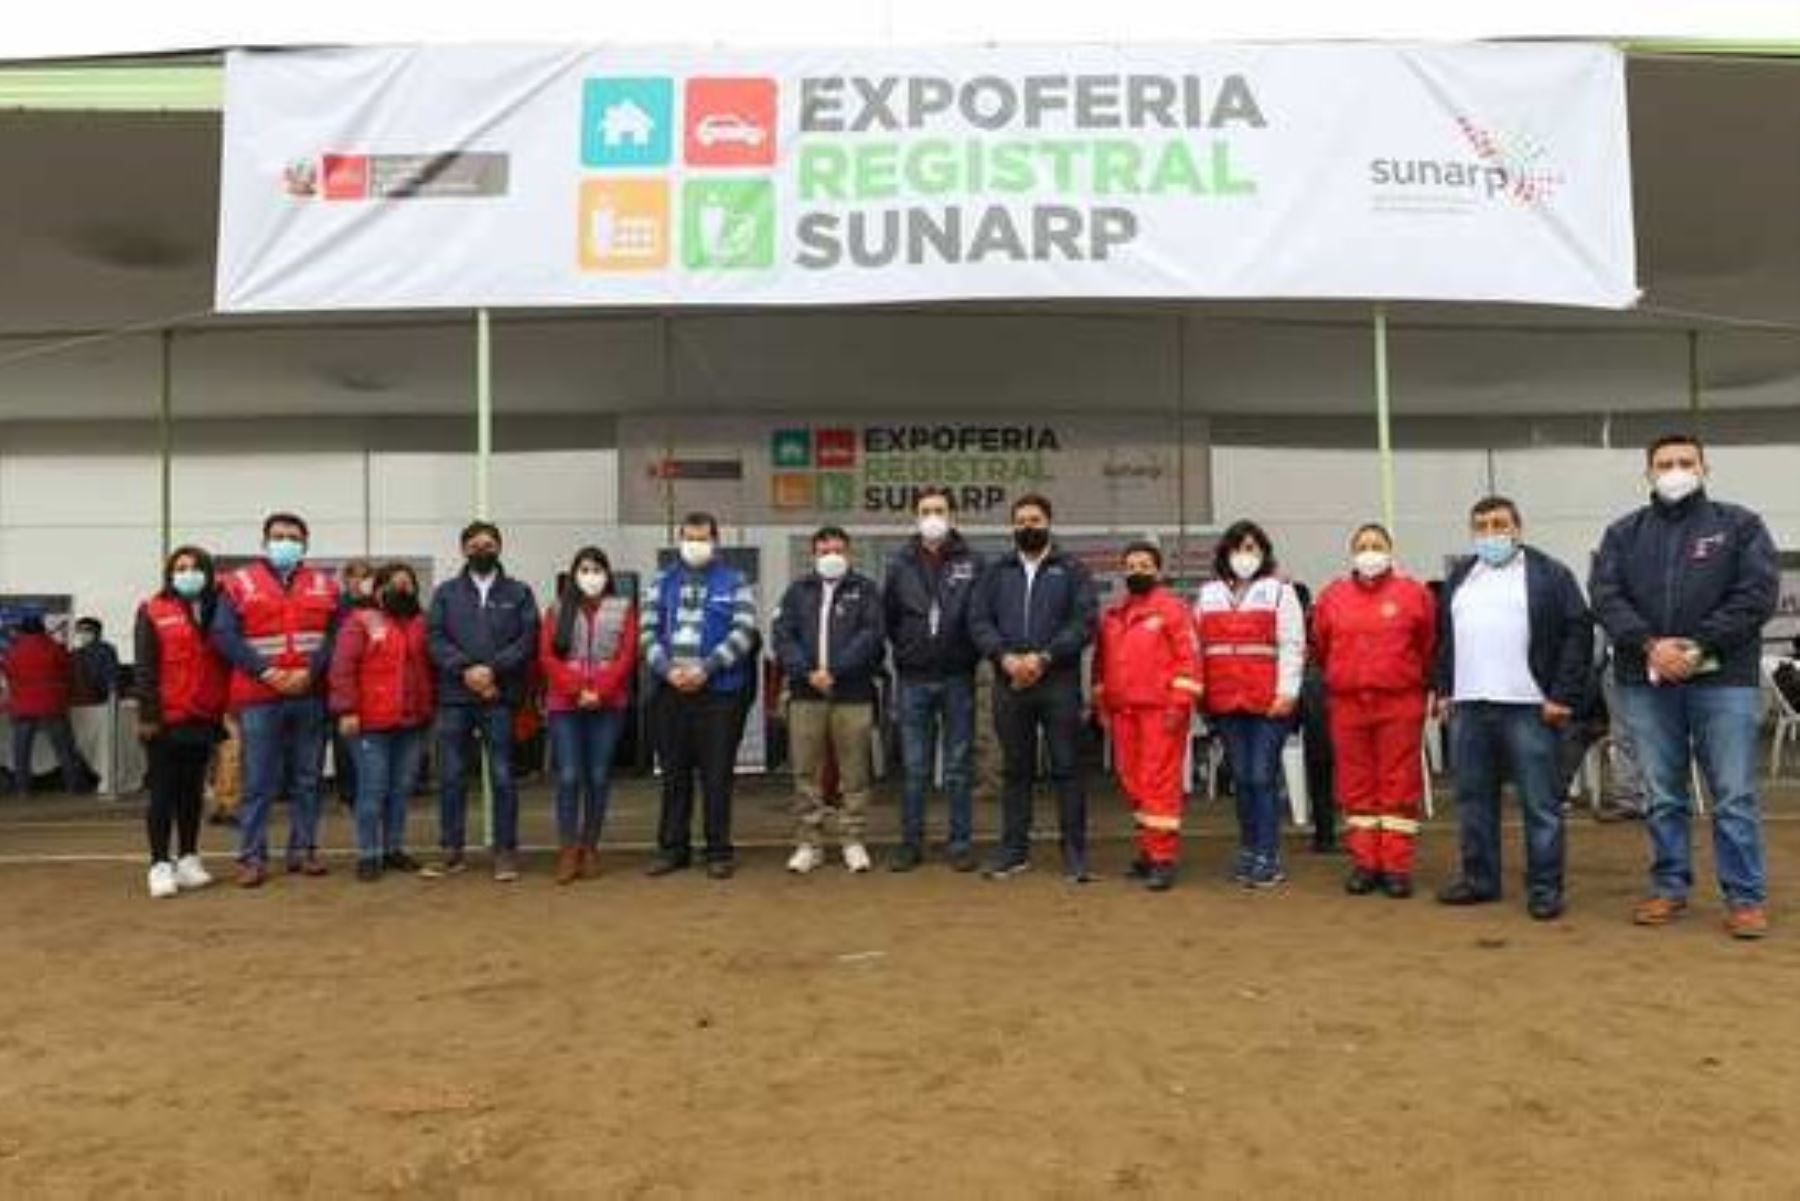 Ministro de Justicia y titular de Sunarp participaron en expoferia registral en Pachacútec.